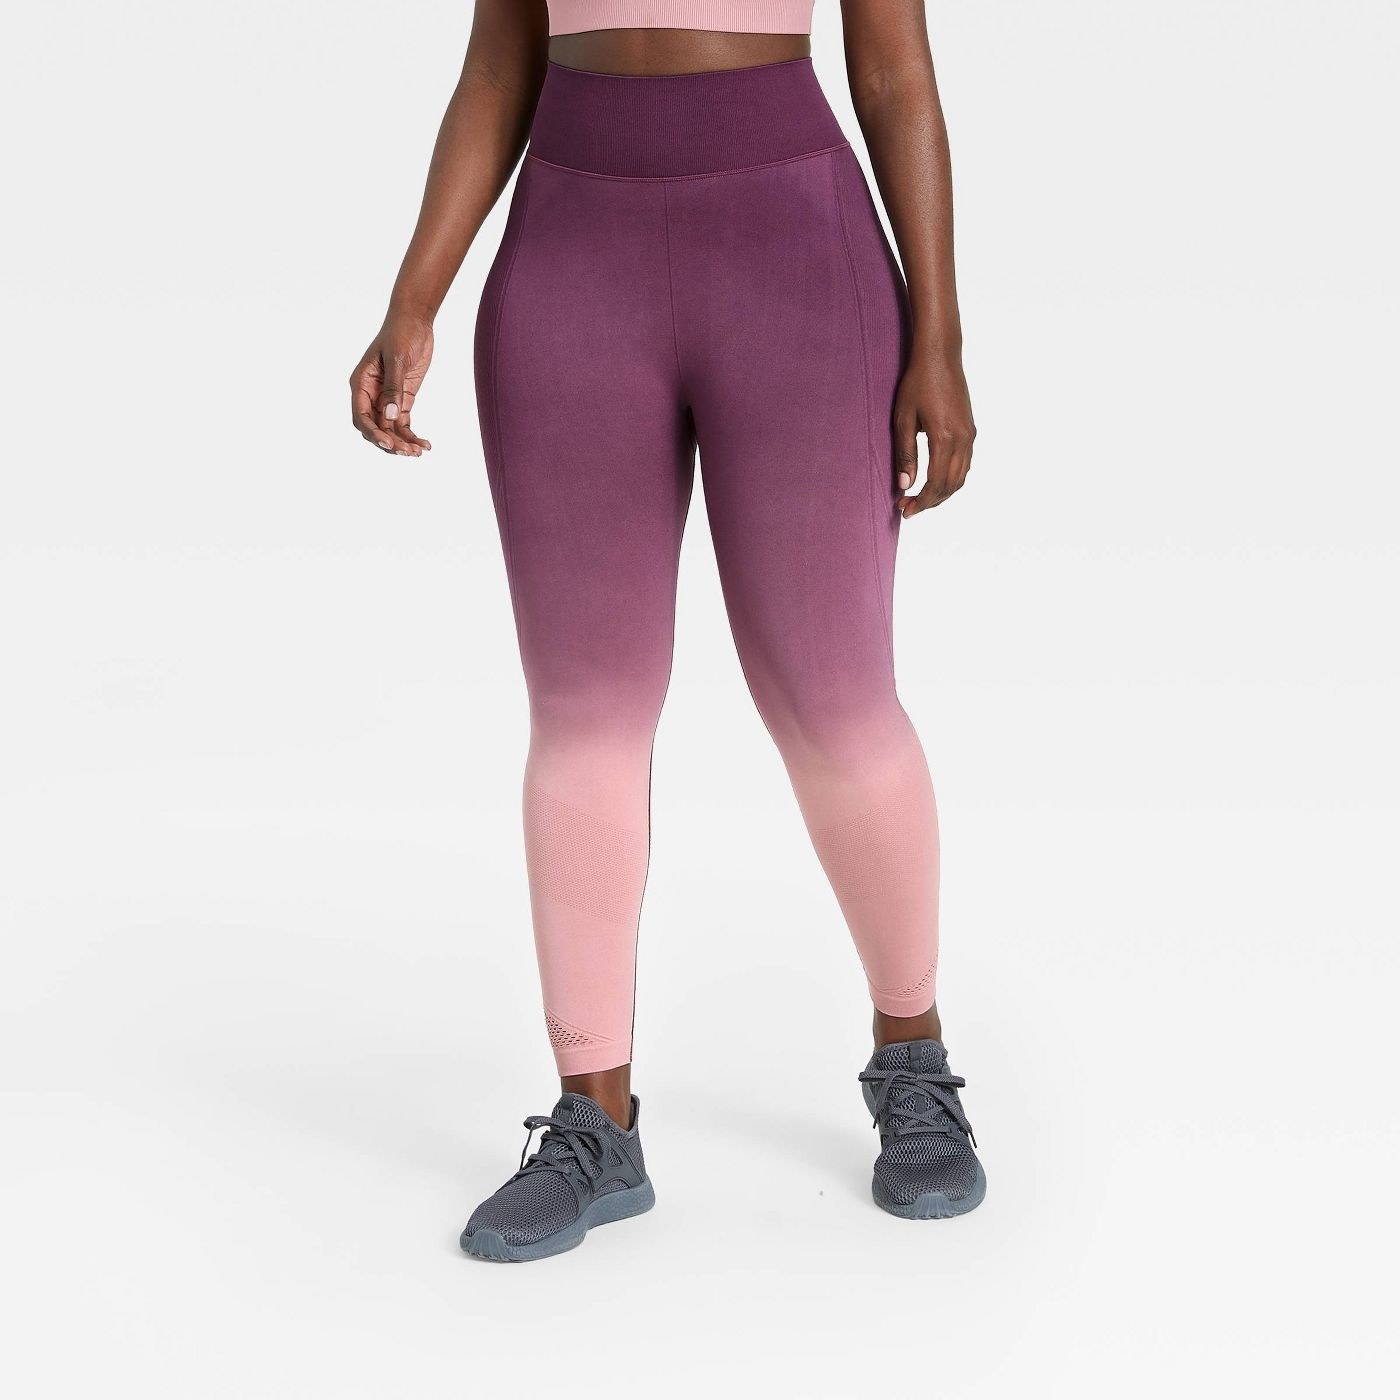 model  wearing purple ombre leggings